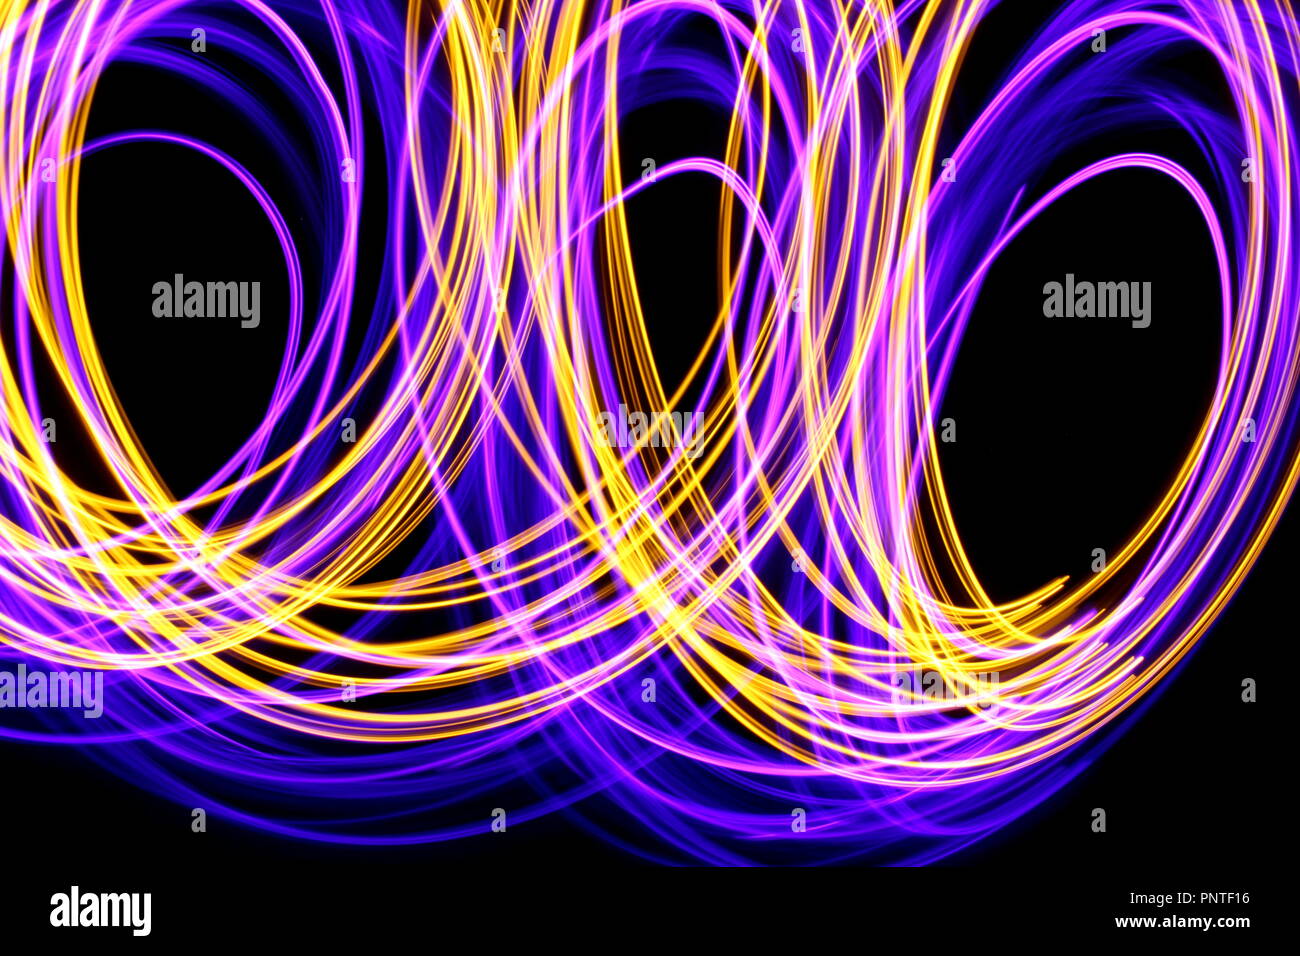 Fotografía, Pintura de luz larga exposición foto de violeta, rosa y oro las luces de hadas en abstracto bucles de luz contra un fondo negro Foto de stock